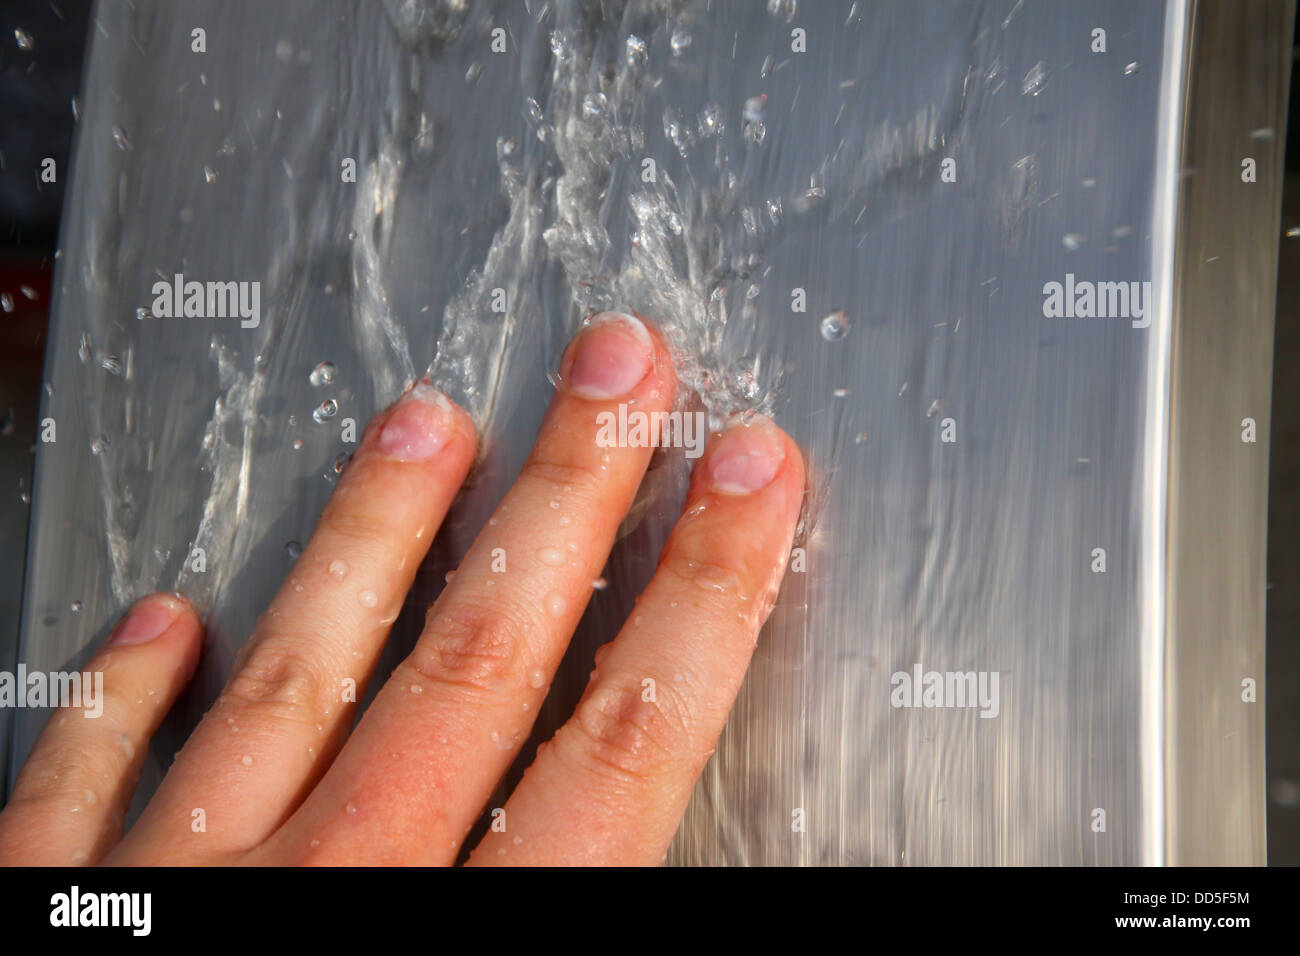 Los dedos del hombre en agua corriente. Foto de stock